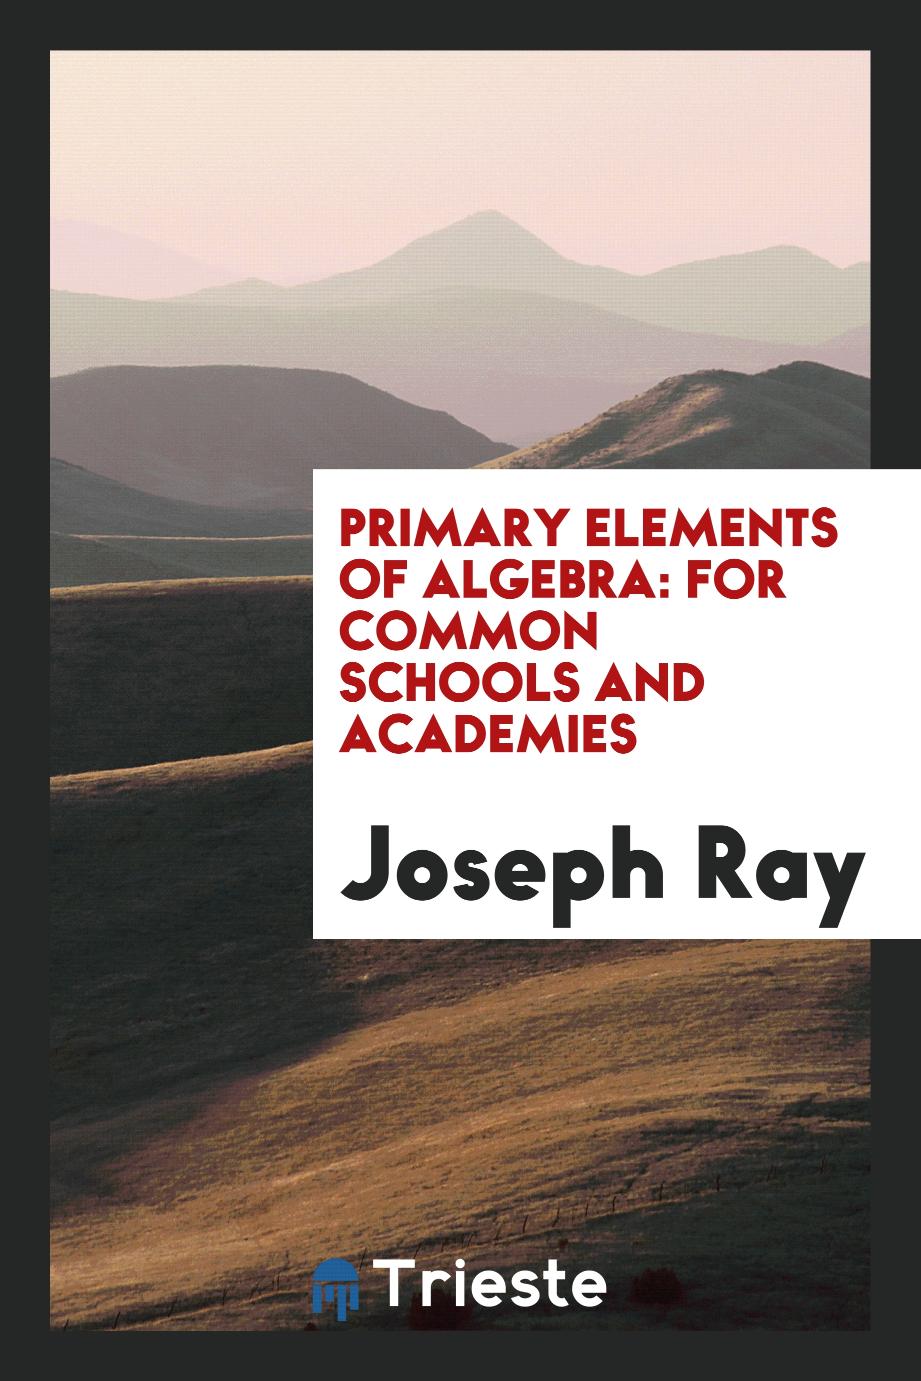 Primary elements of algebra: for common schools and academies